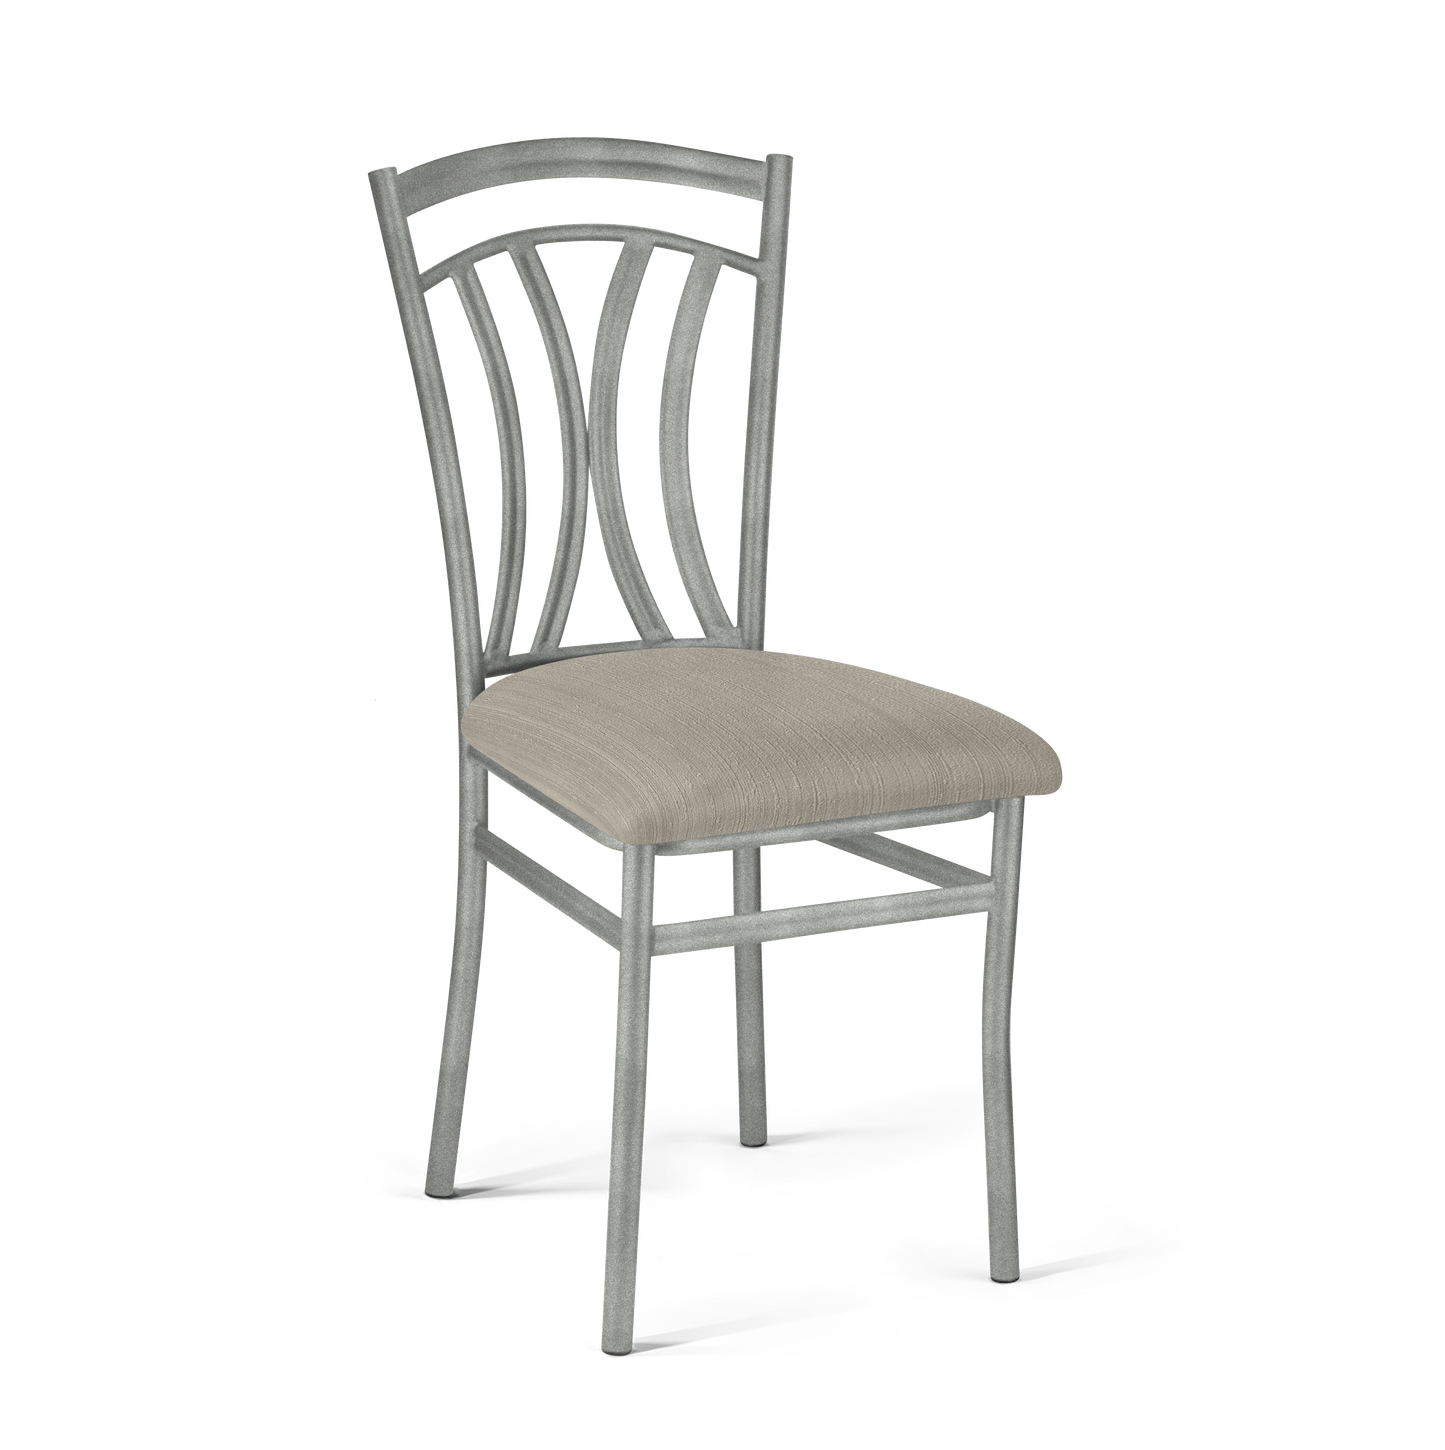 Mini Crescent Chair - 524